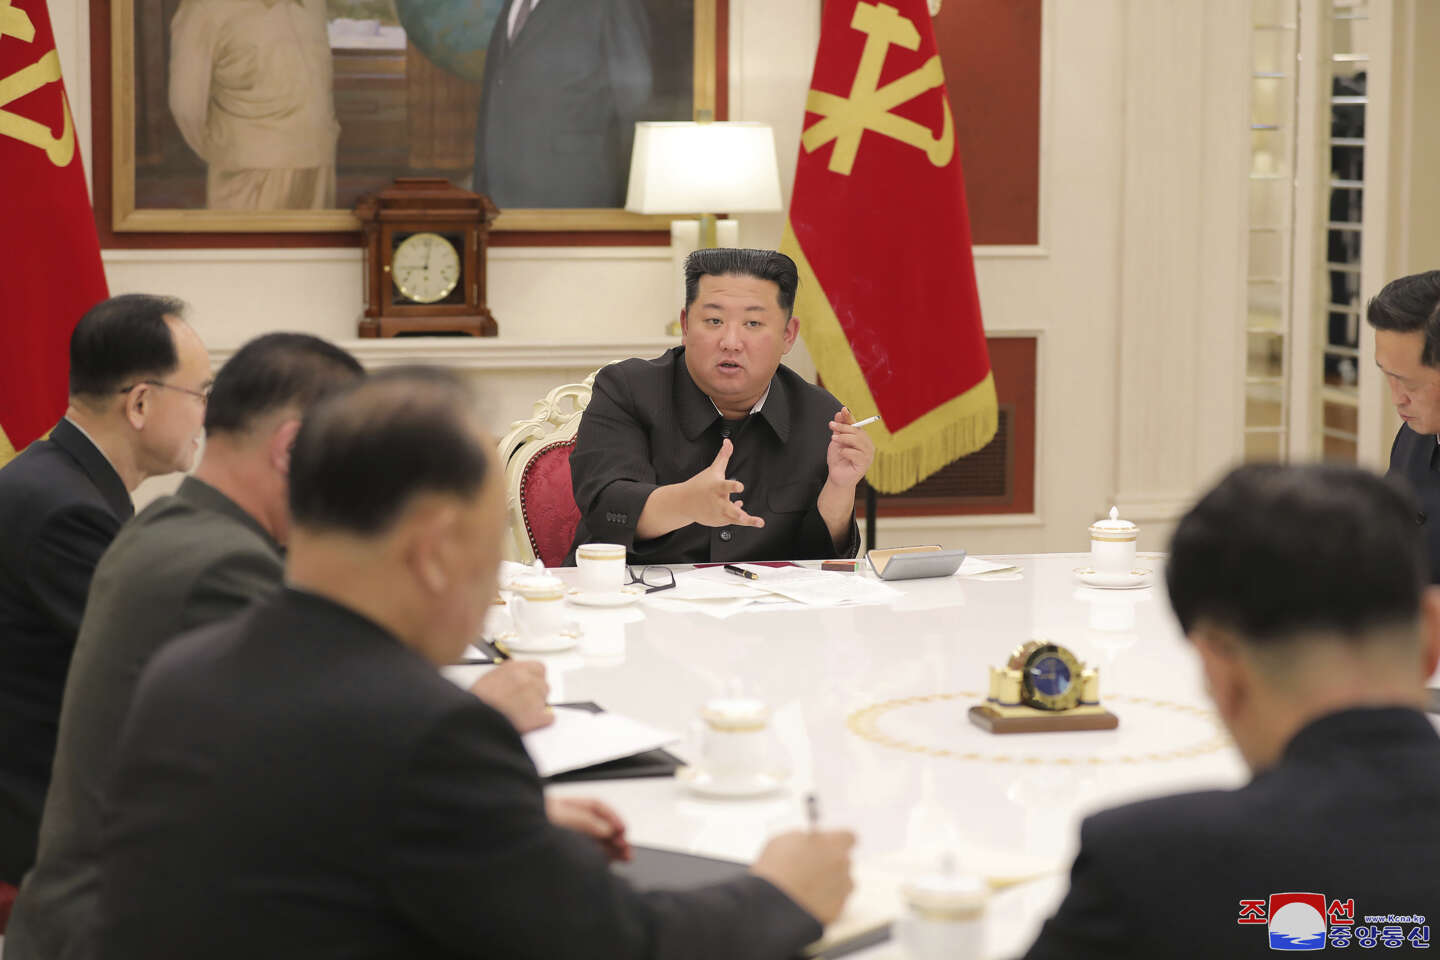 La propagation du Covid-19 en Corée du Nord provoque la colère de Kim Jong-un